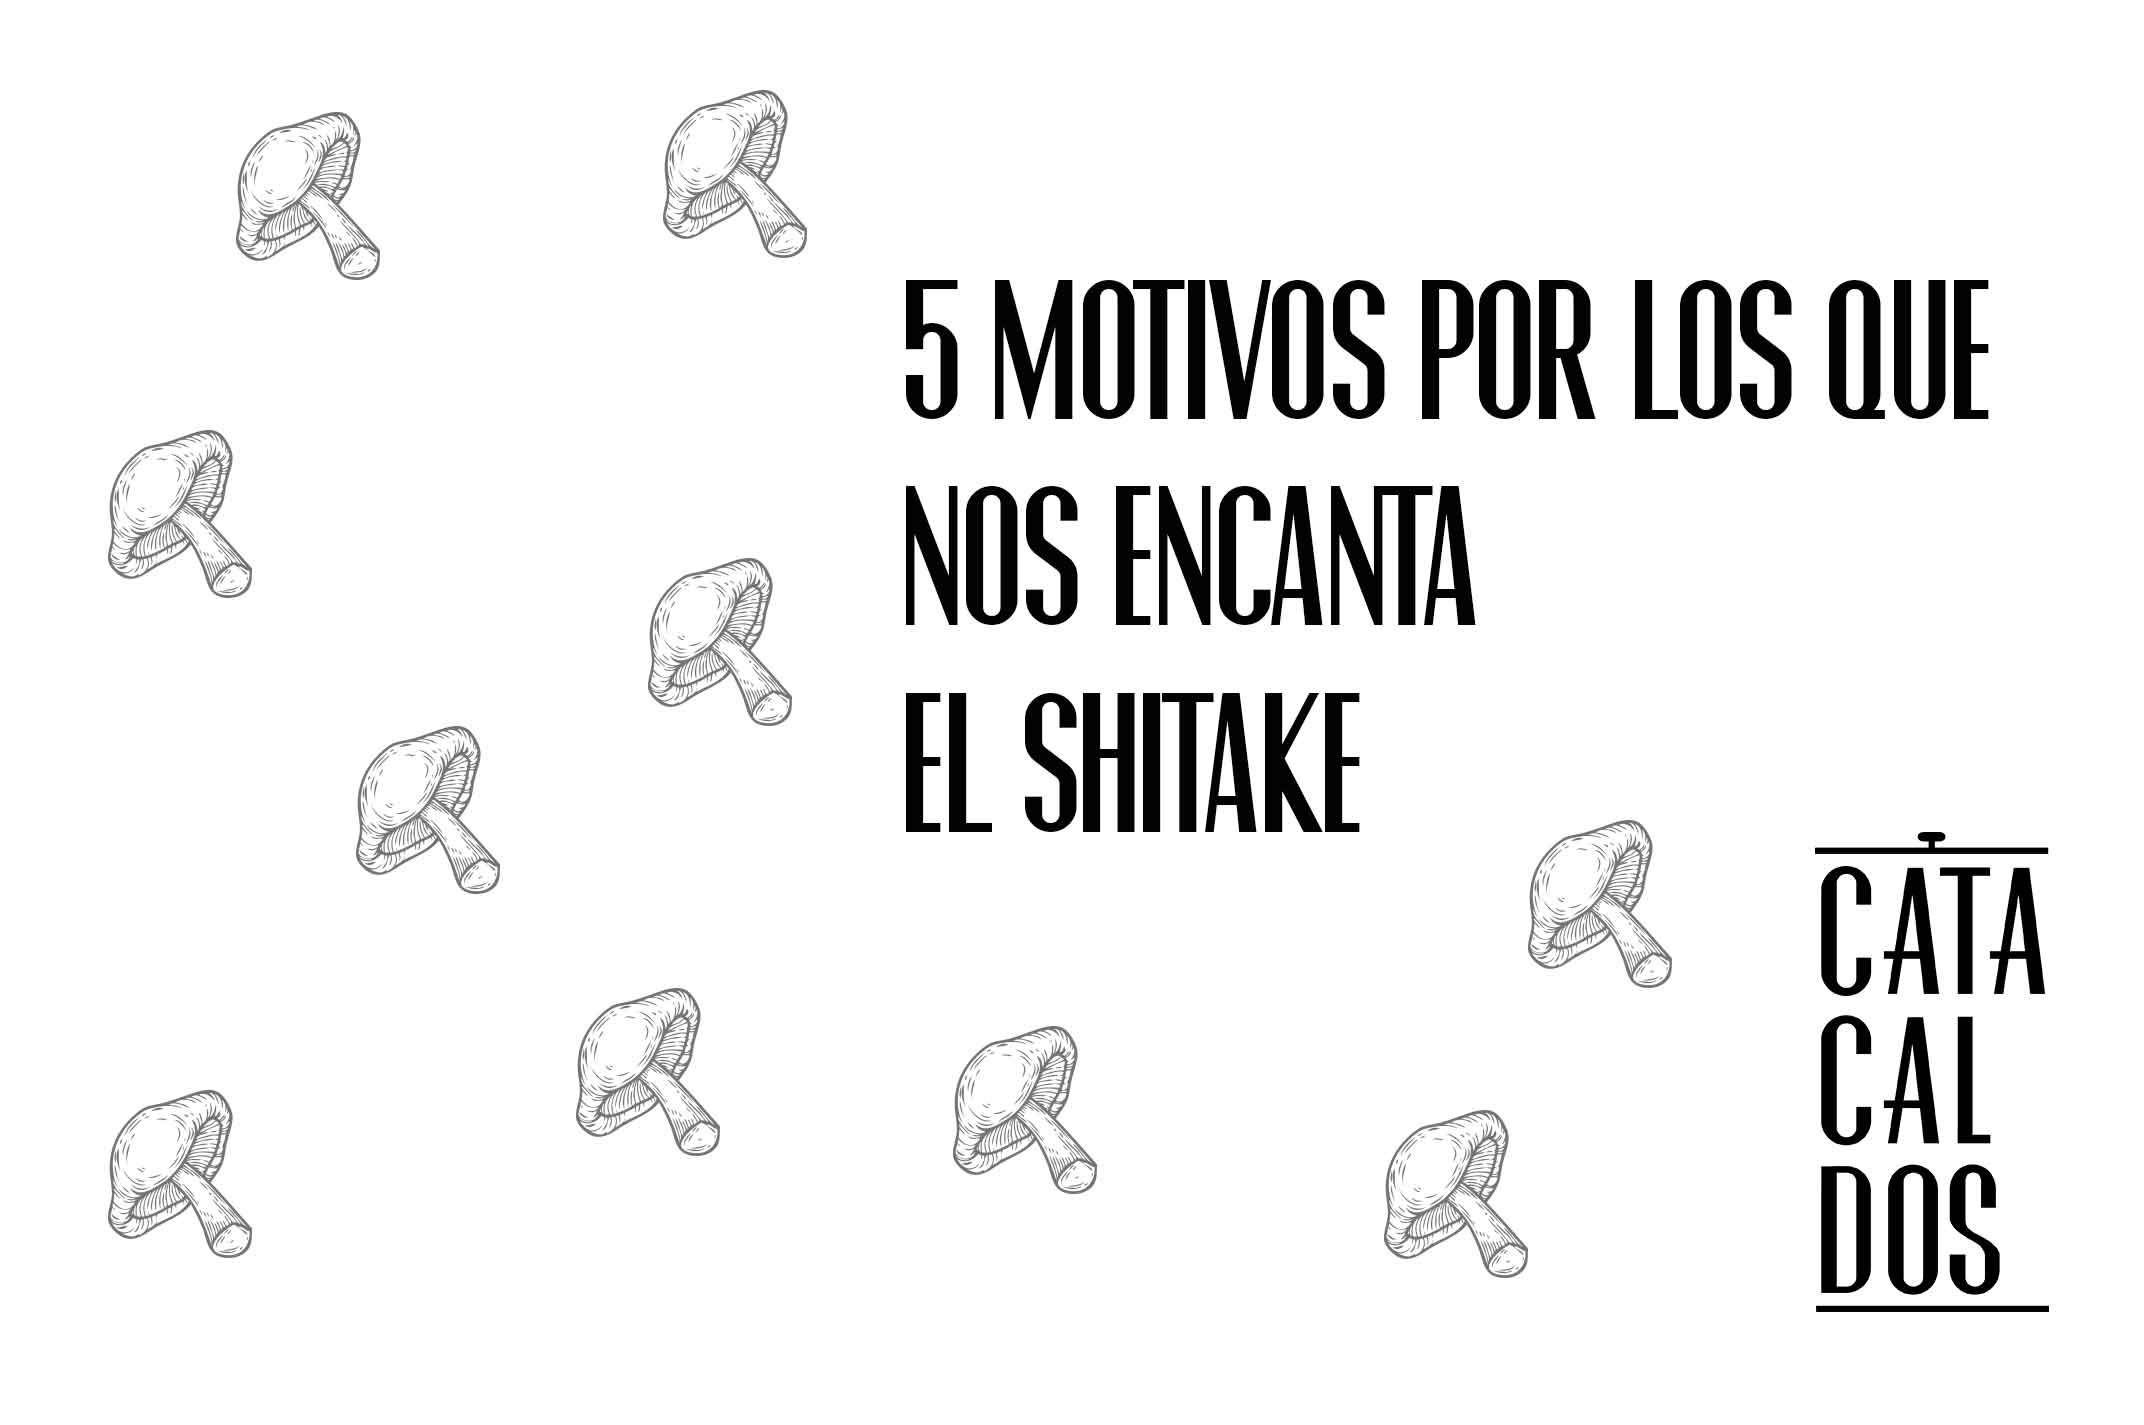 5 Motivos por los que nos encanta el shiitake